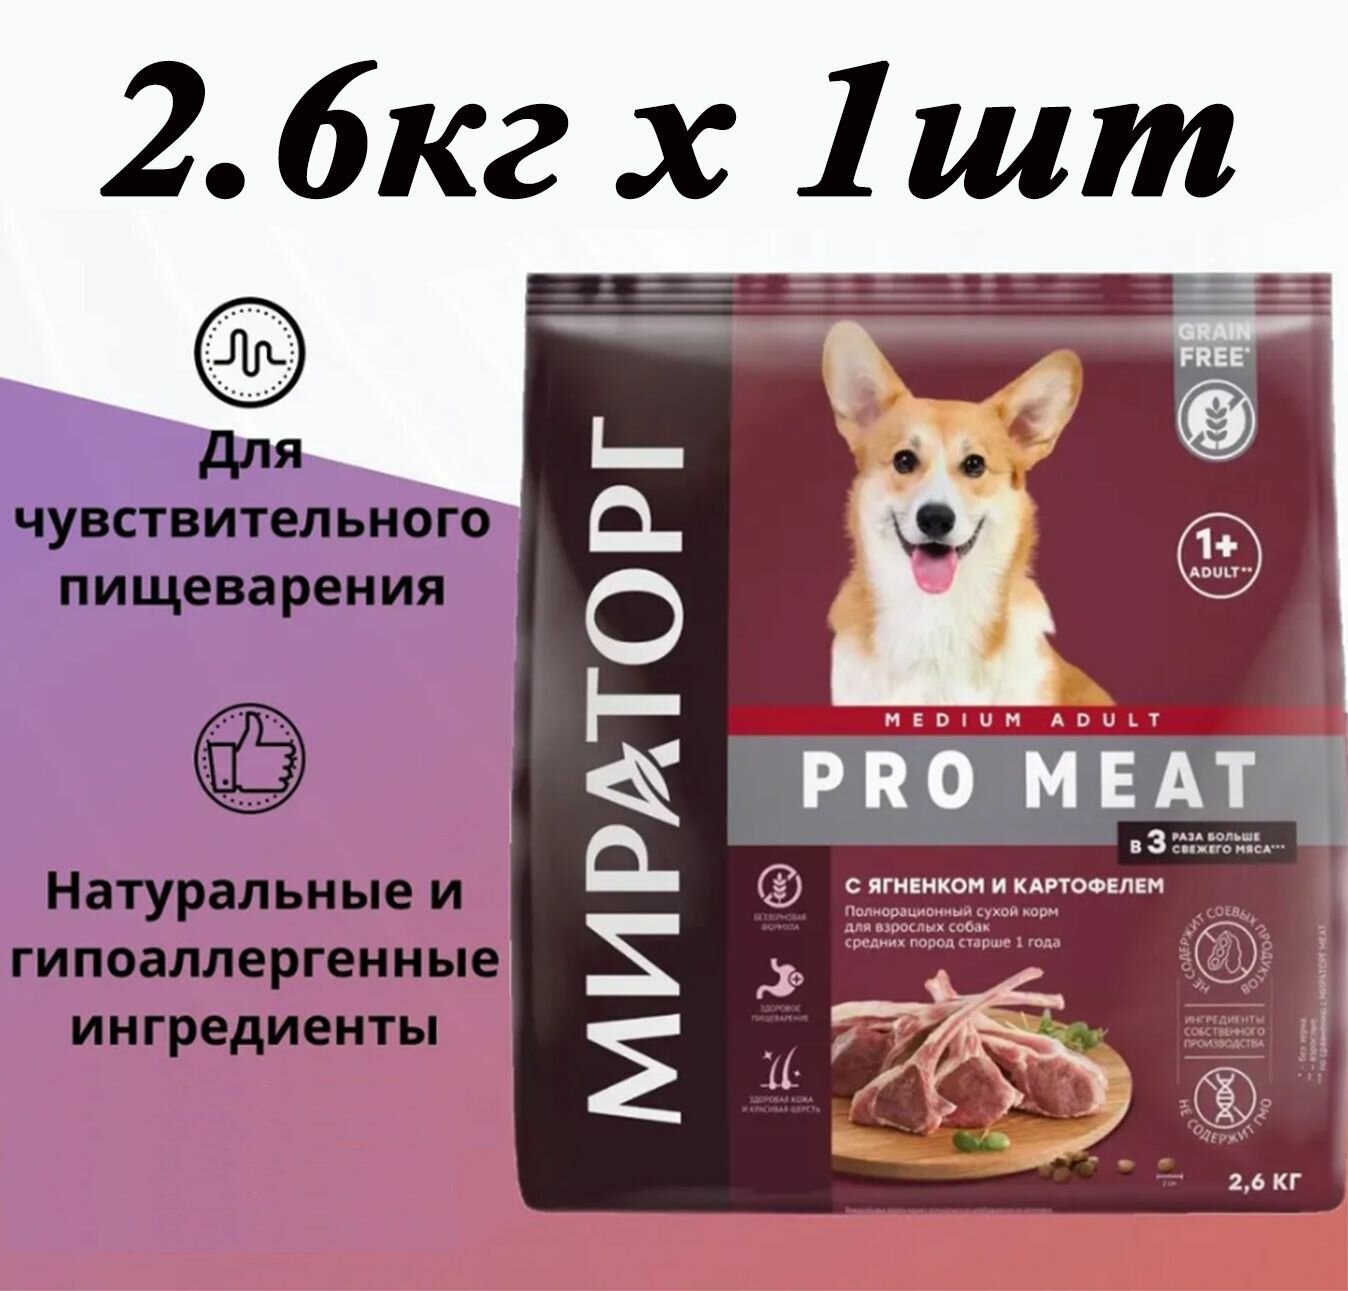 Сухой корм Мираторг Pro Meat 2.6кг 1шт с ягненком и картофелем, для собак средних пород